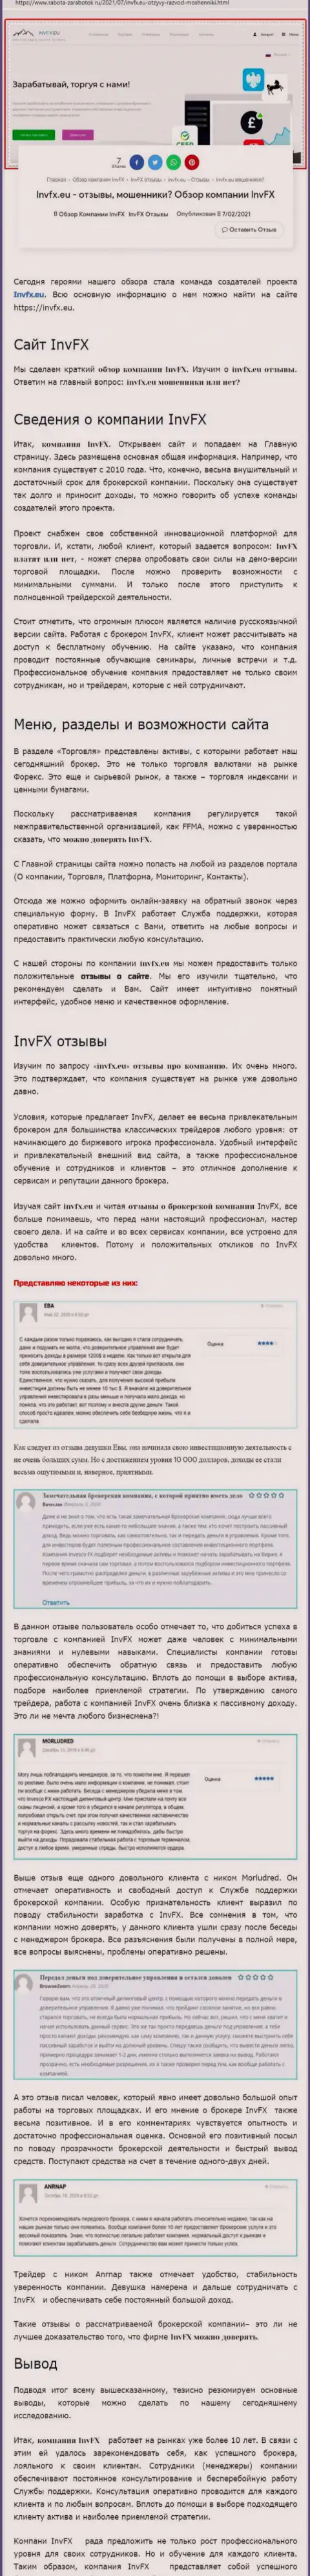 Информационный материал сайта rabota zarabotok ru о форекс организации ИНВФИкс